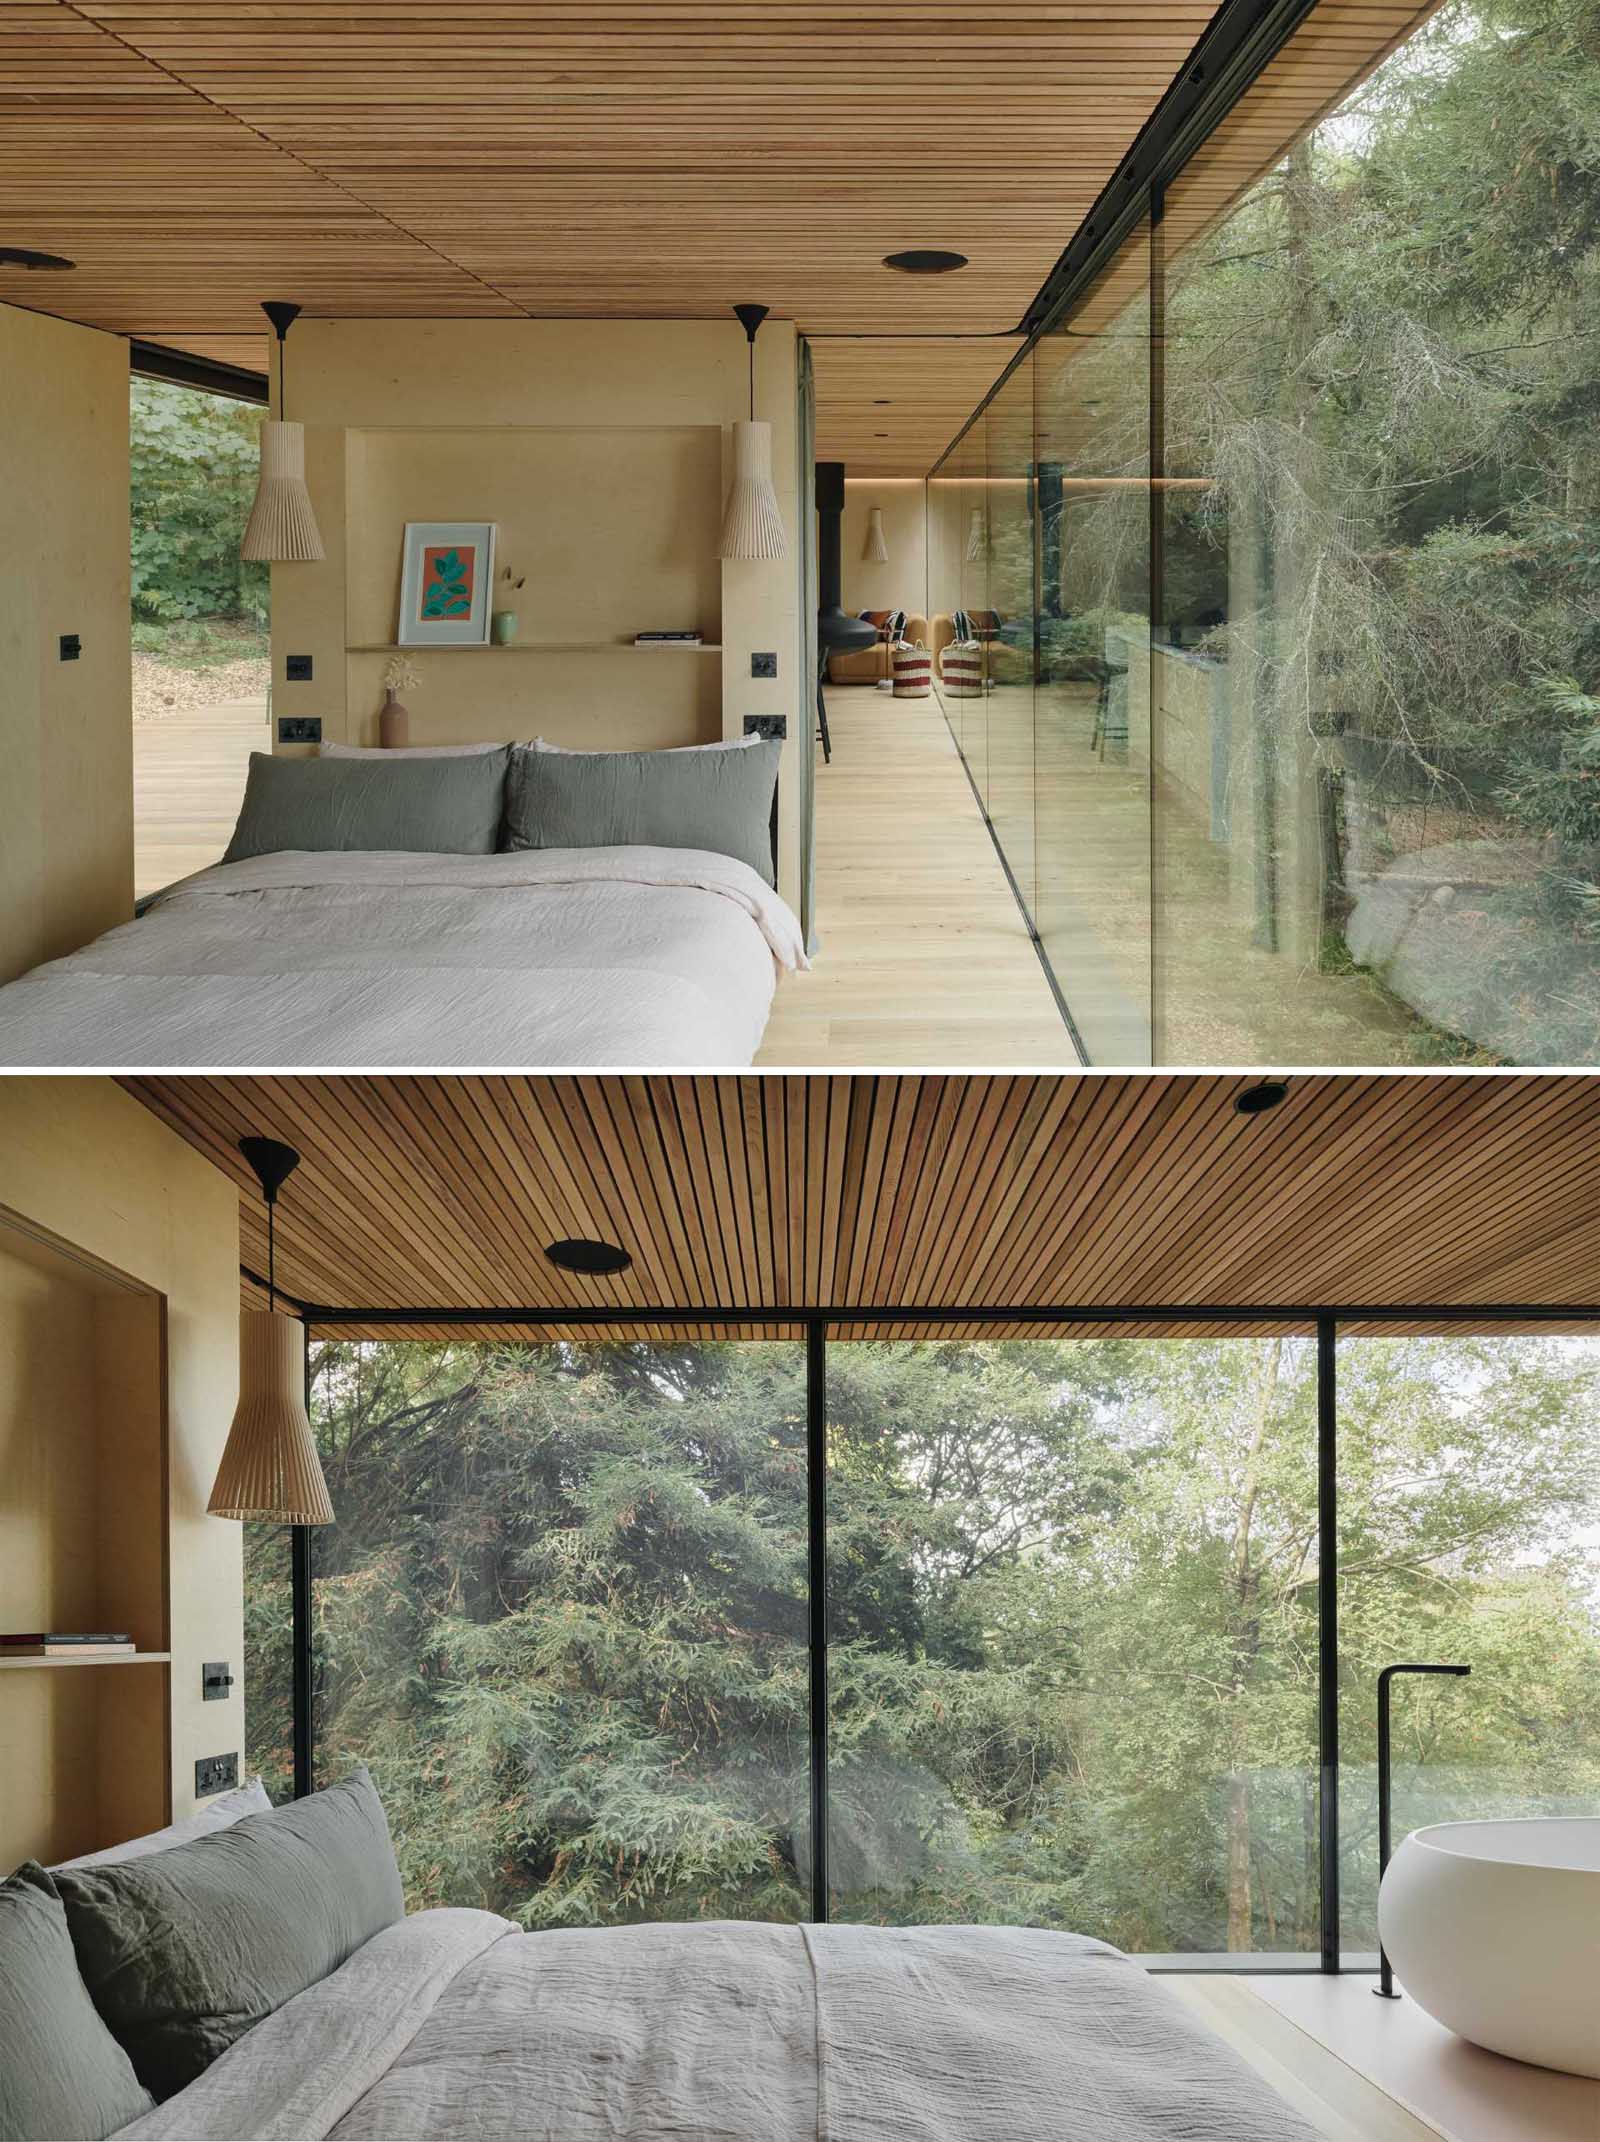 دیوارهای شیشه ای و سقف چوبی، آشپزخانه را به اتاق خواب این خانه کوچک متصل می کند.